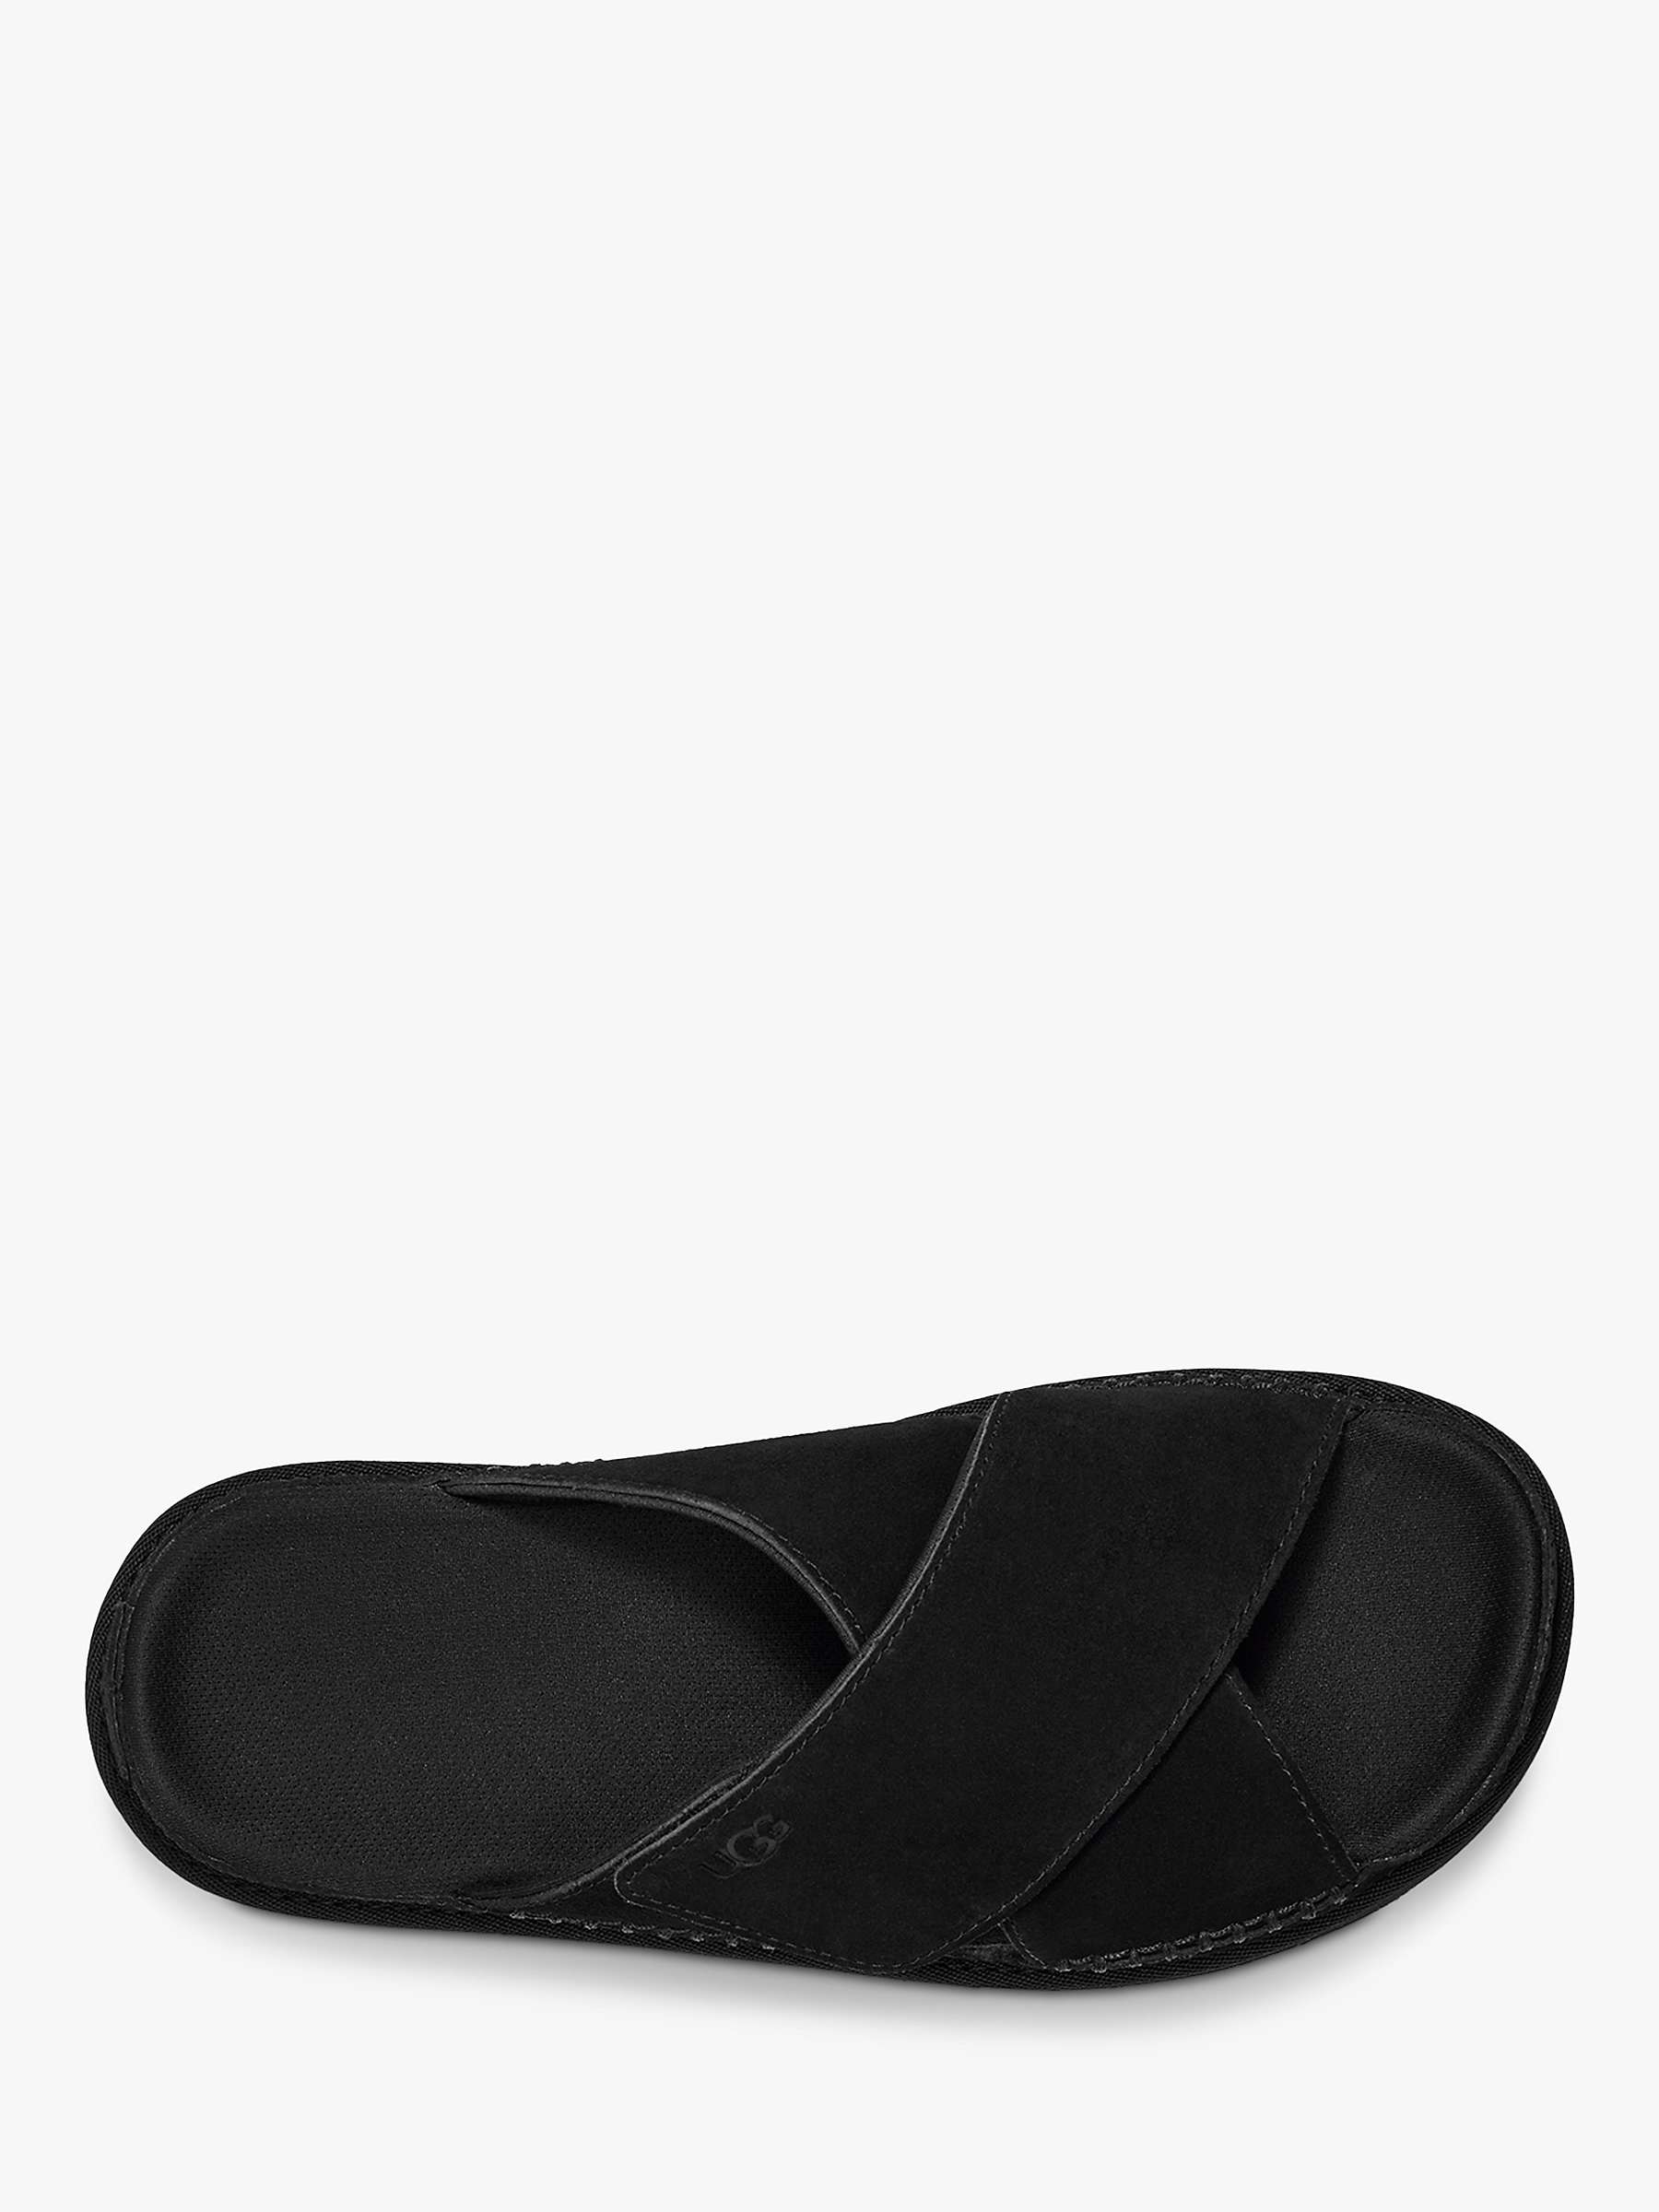 Buy UGG Goldenstar Suede Slider Sandals, Black Online at johnlewis.com